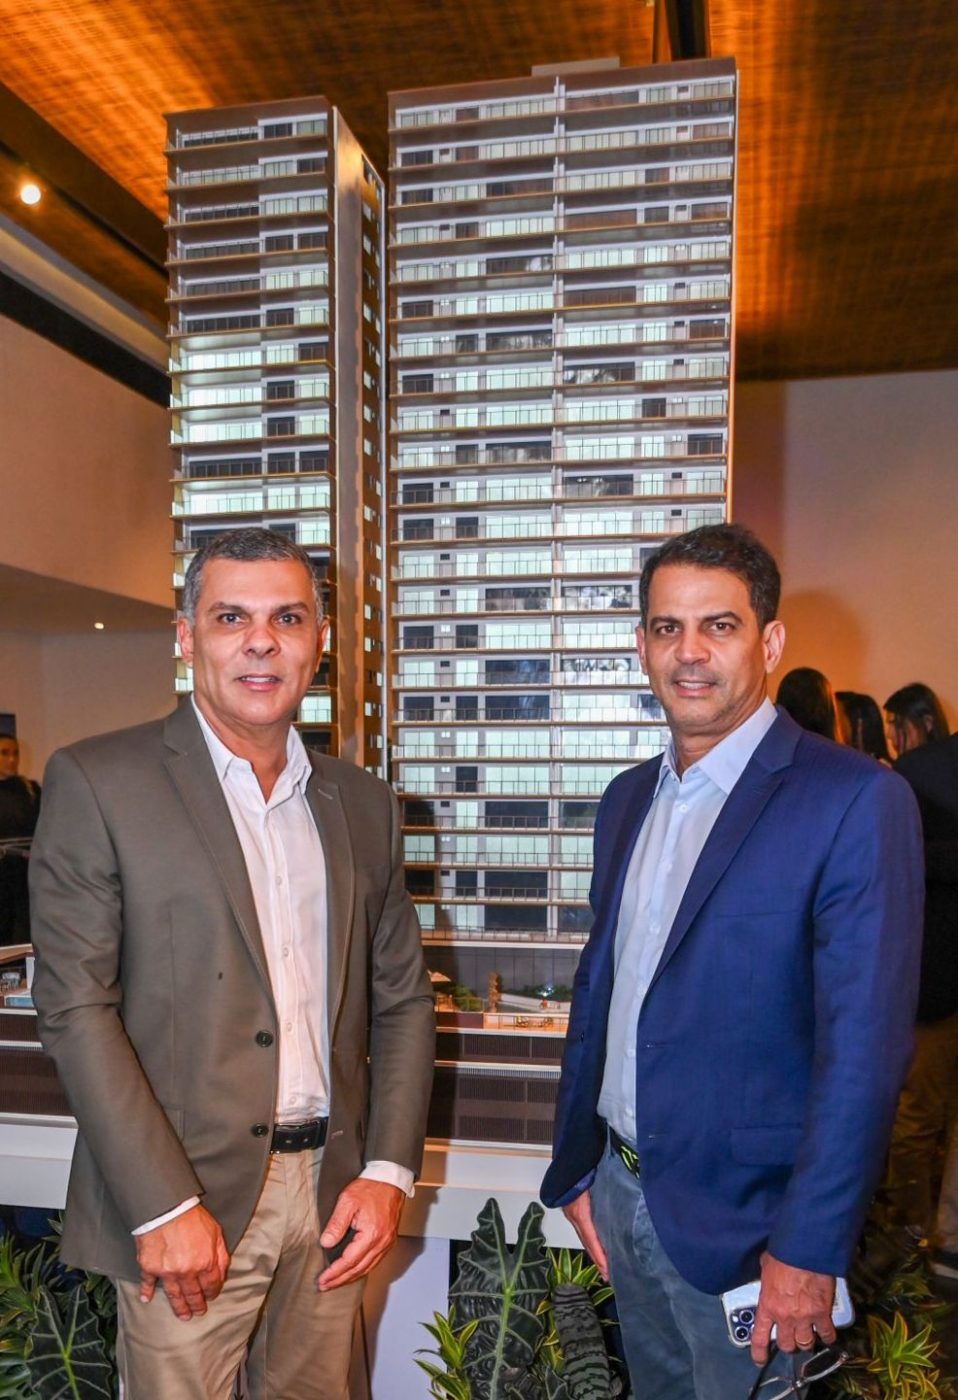 Grupo André Guimarães lança empreendimento de luxo em Salvador durante evento no restaurante Amado. Veja fotos